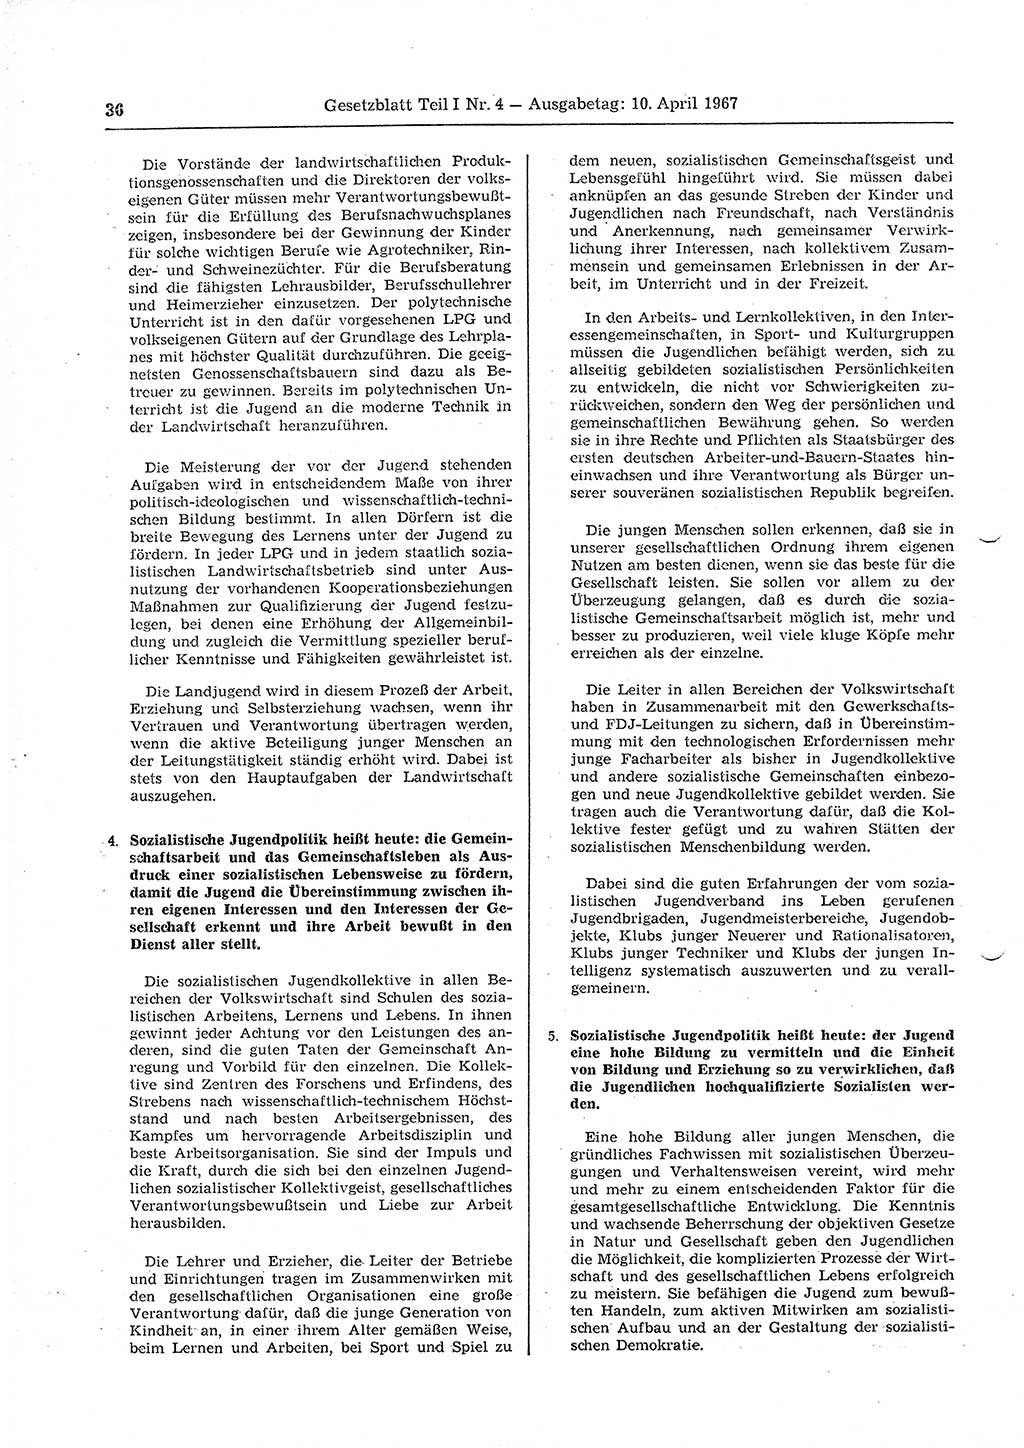 Gesetzblatt (GBl.) der Deutschen Demokratischen Republik (DDR) Teil Ⅰ 1967, Seite 36 (GBl. DDR Ⅰ 1967, S. 36)